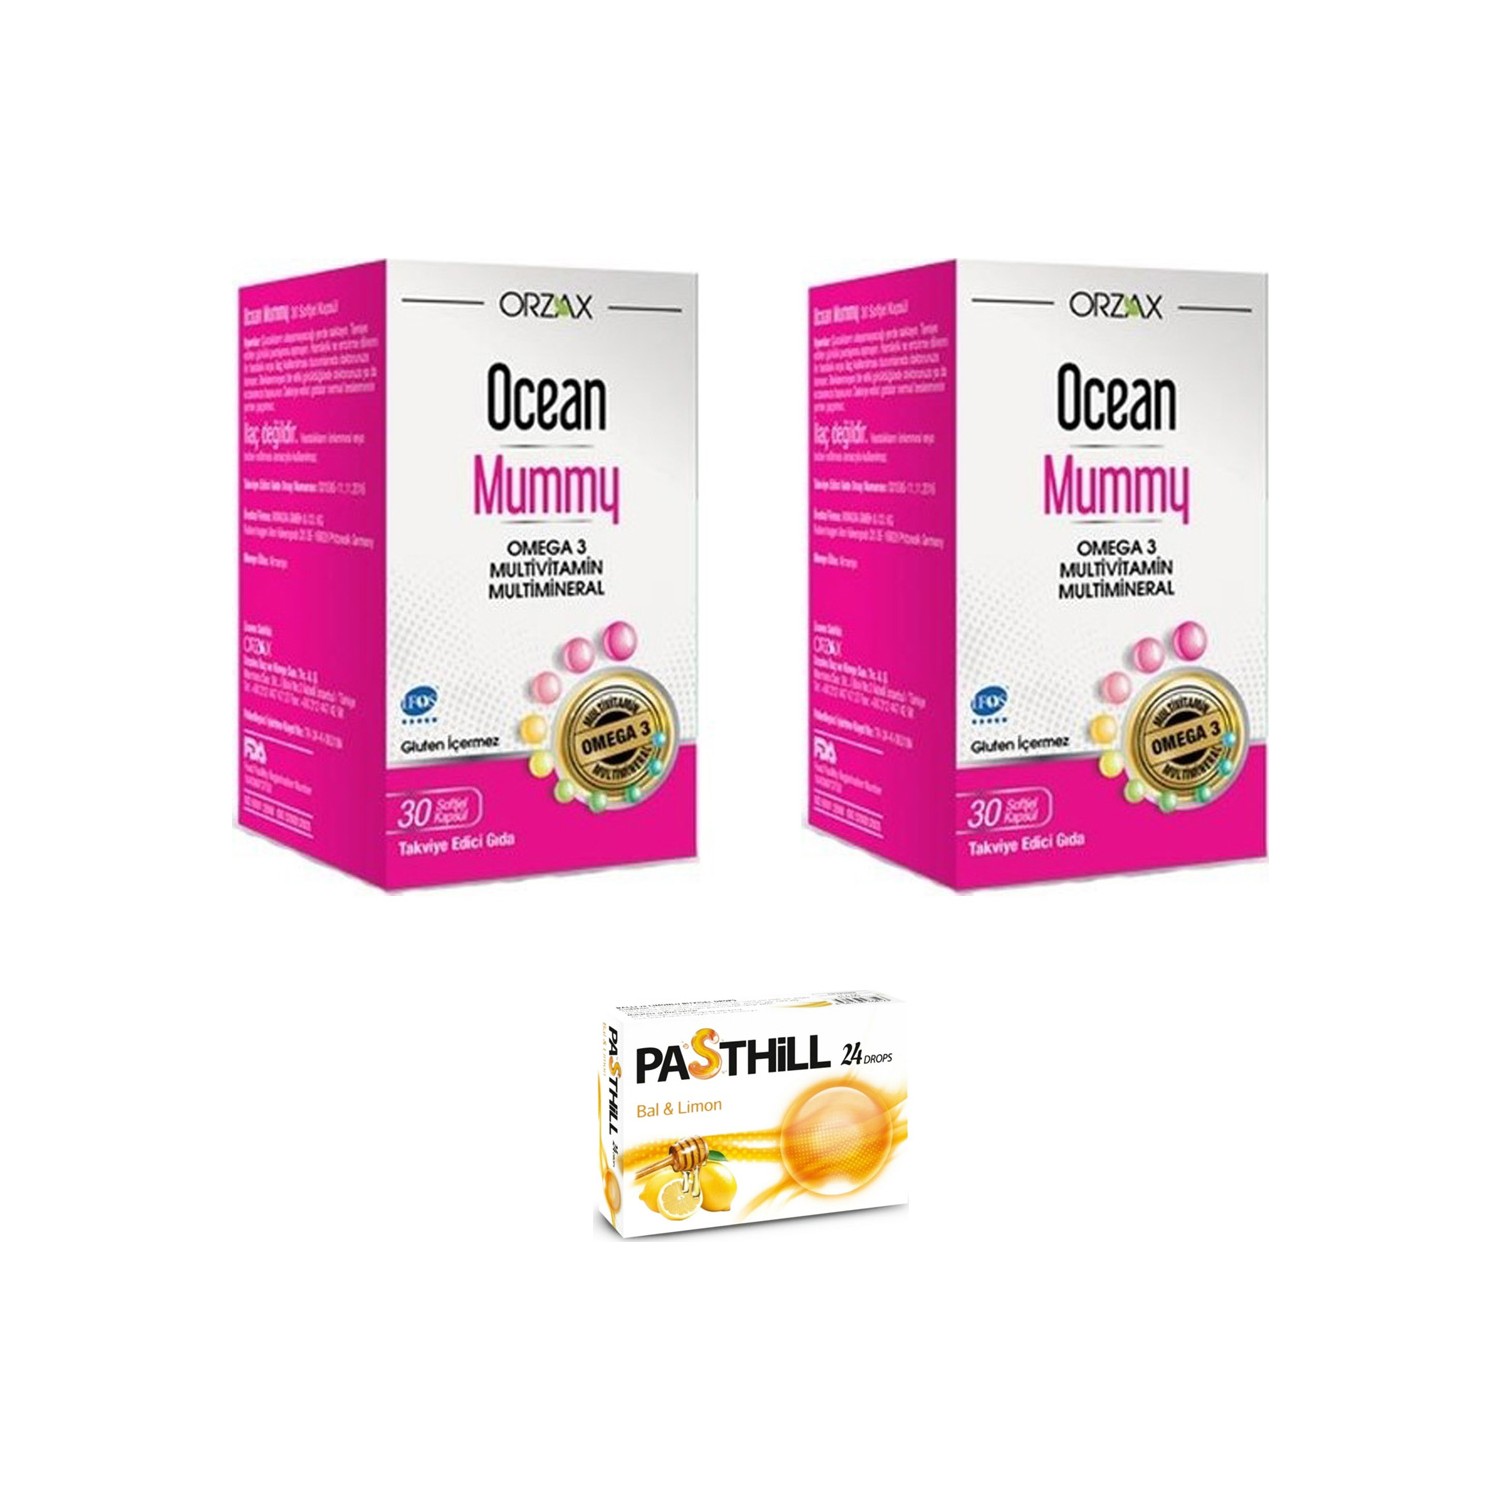 Пищевая добавка Orzax Ocean Mummy, 2 упаковки по 30 желатиновых капсул + Пастилки Pasthill со вкусом меда и лимона hello mummy